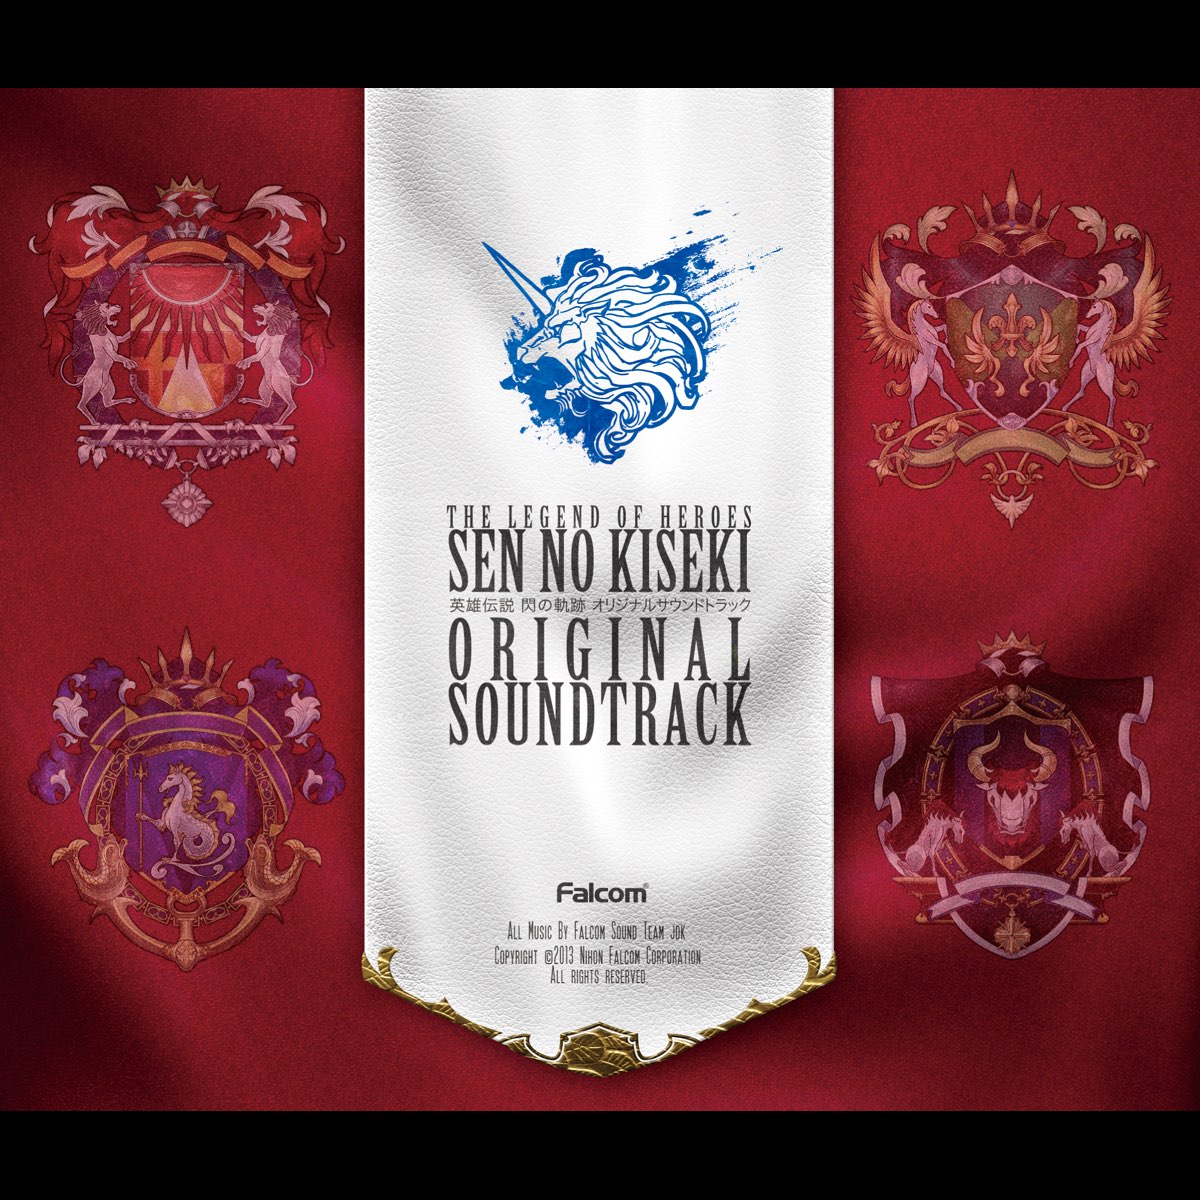 The Legend of Heroes: Sen No Kiseki (Original Soundtrack) - Album by Falcom  Sound Team jdk - Apple Music